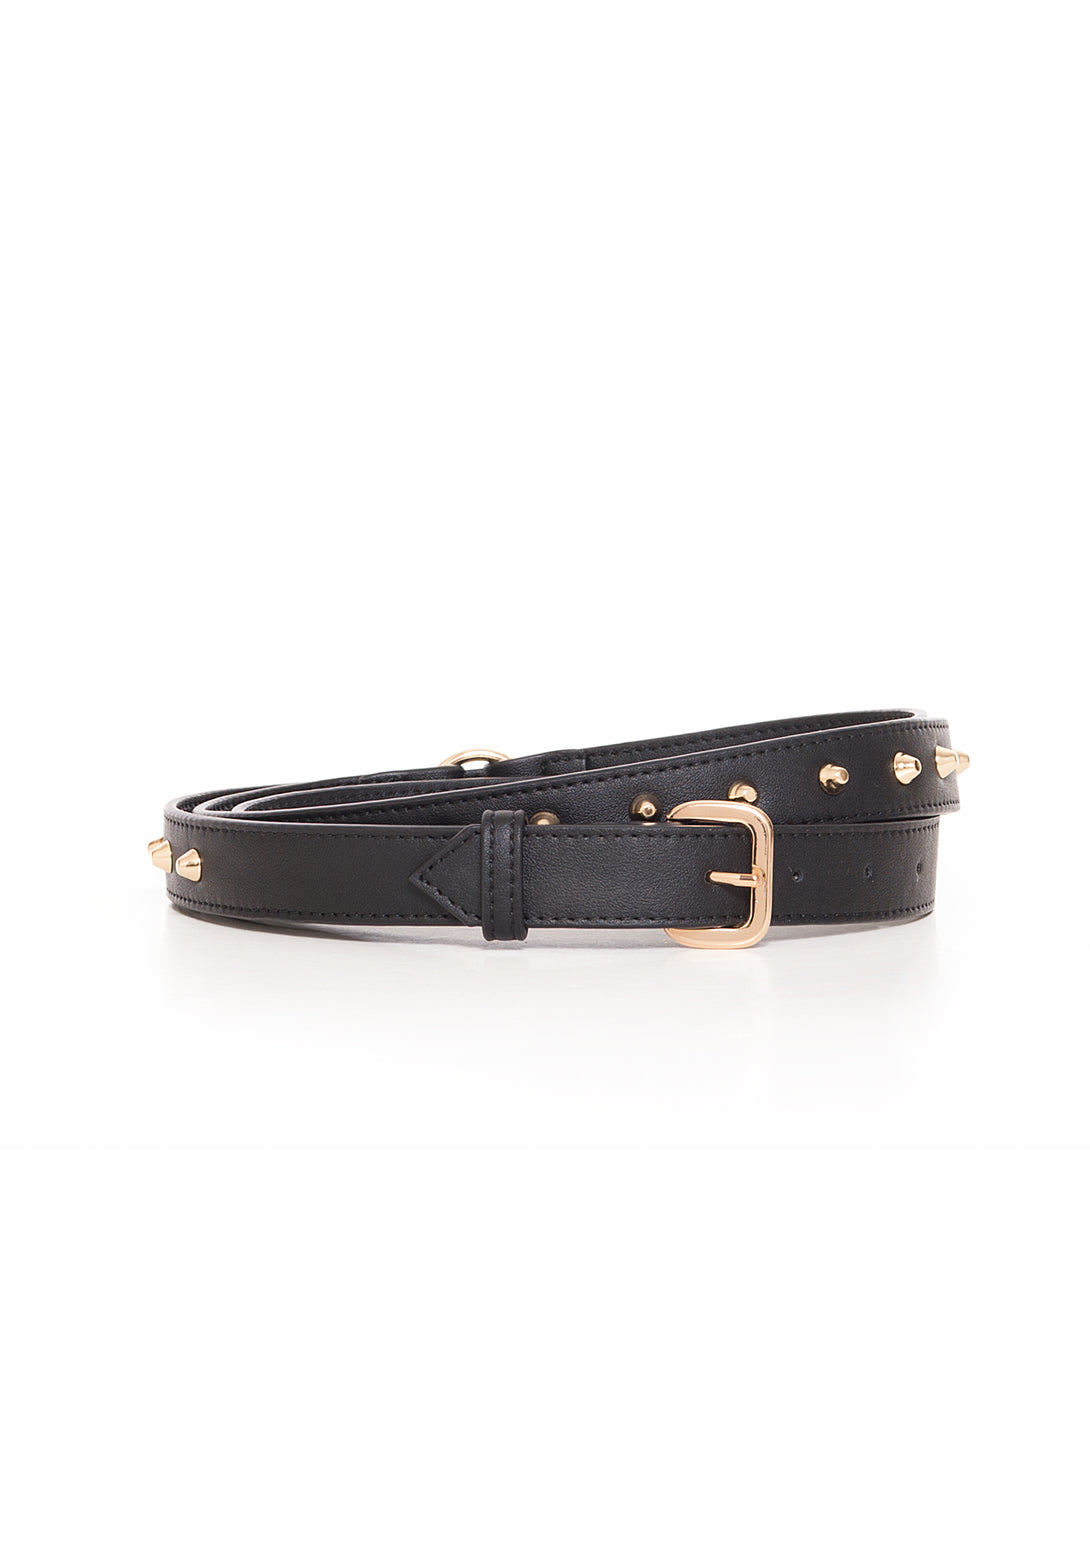 Cintura sottile in eco pelle con borchie-FRACOMINA-FA22WA5007P41101-053-FA-XS